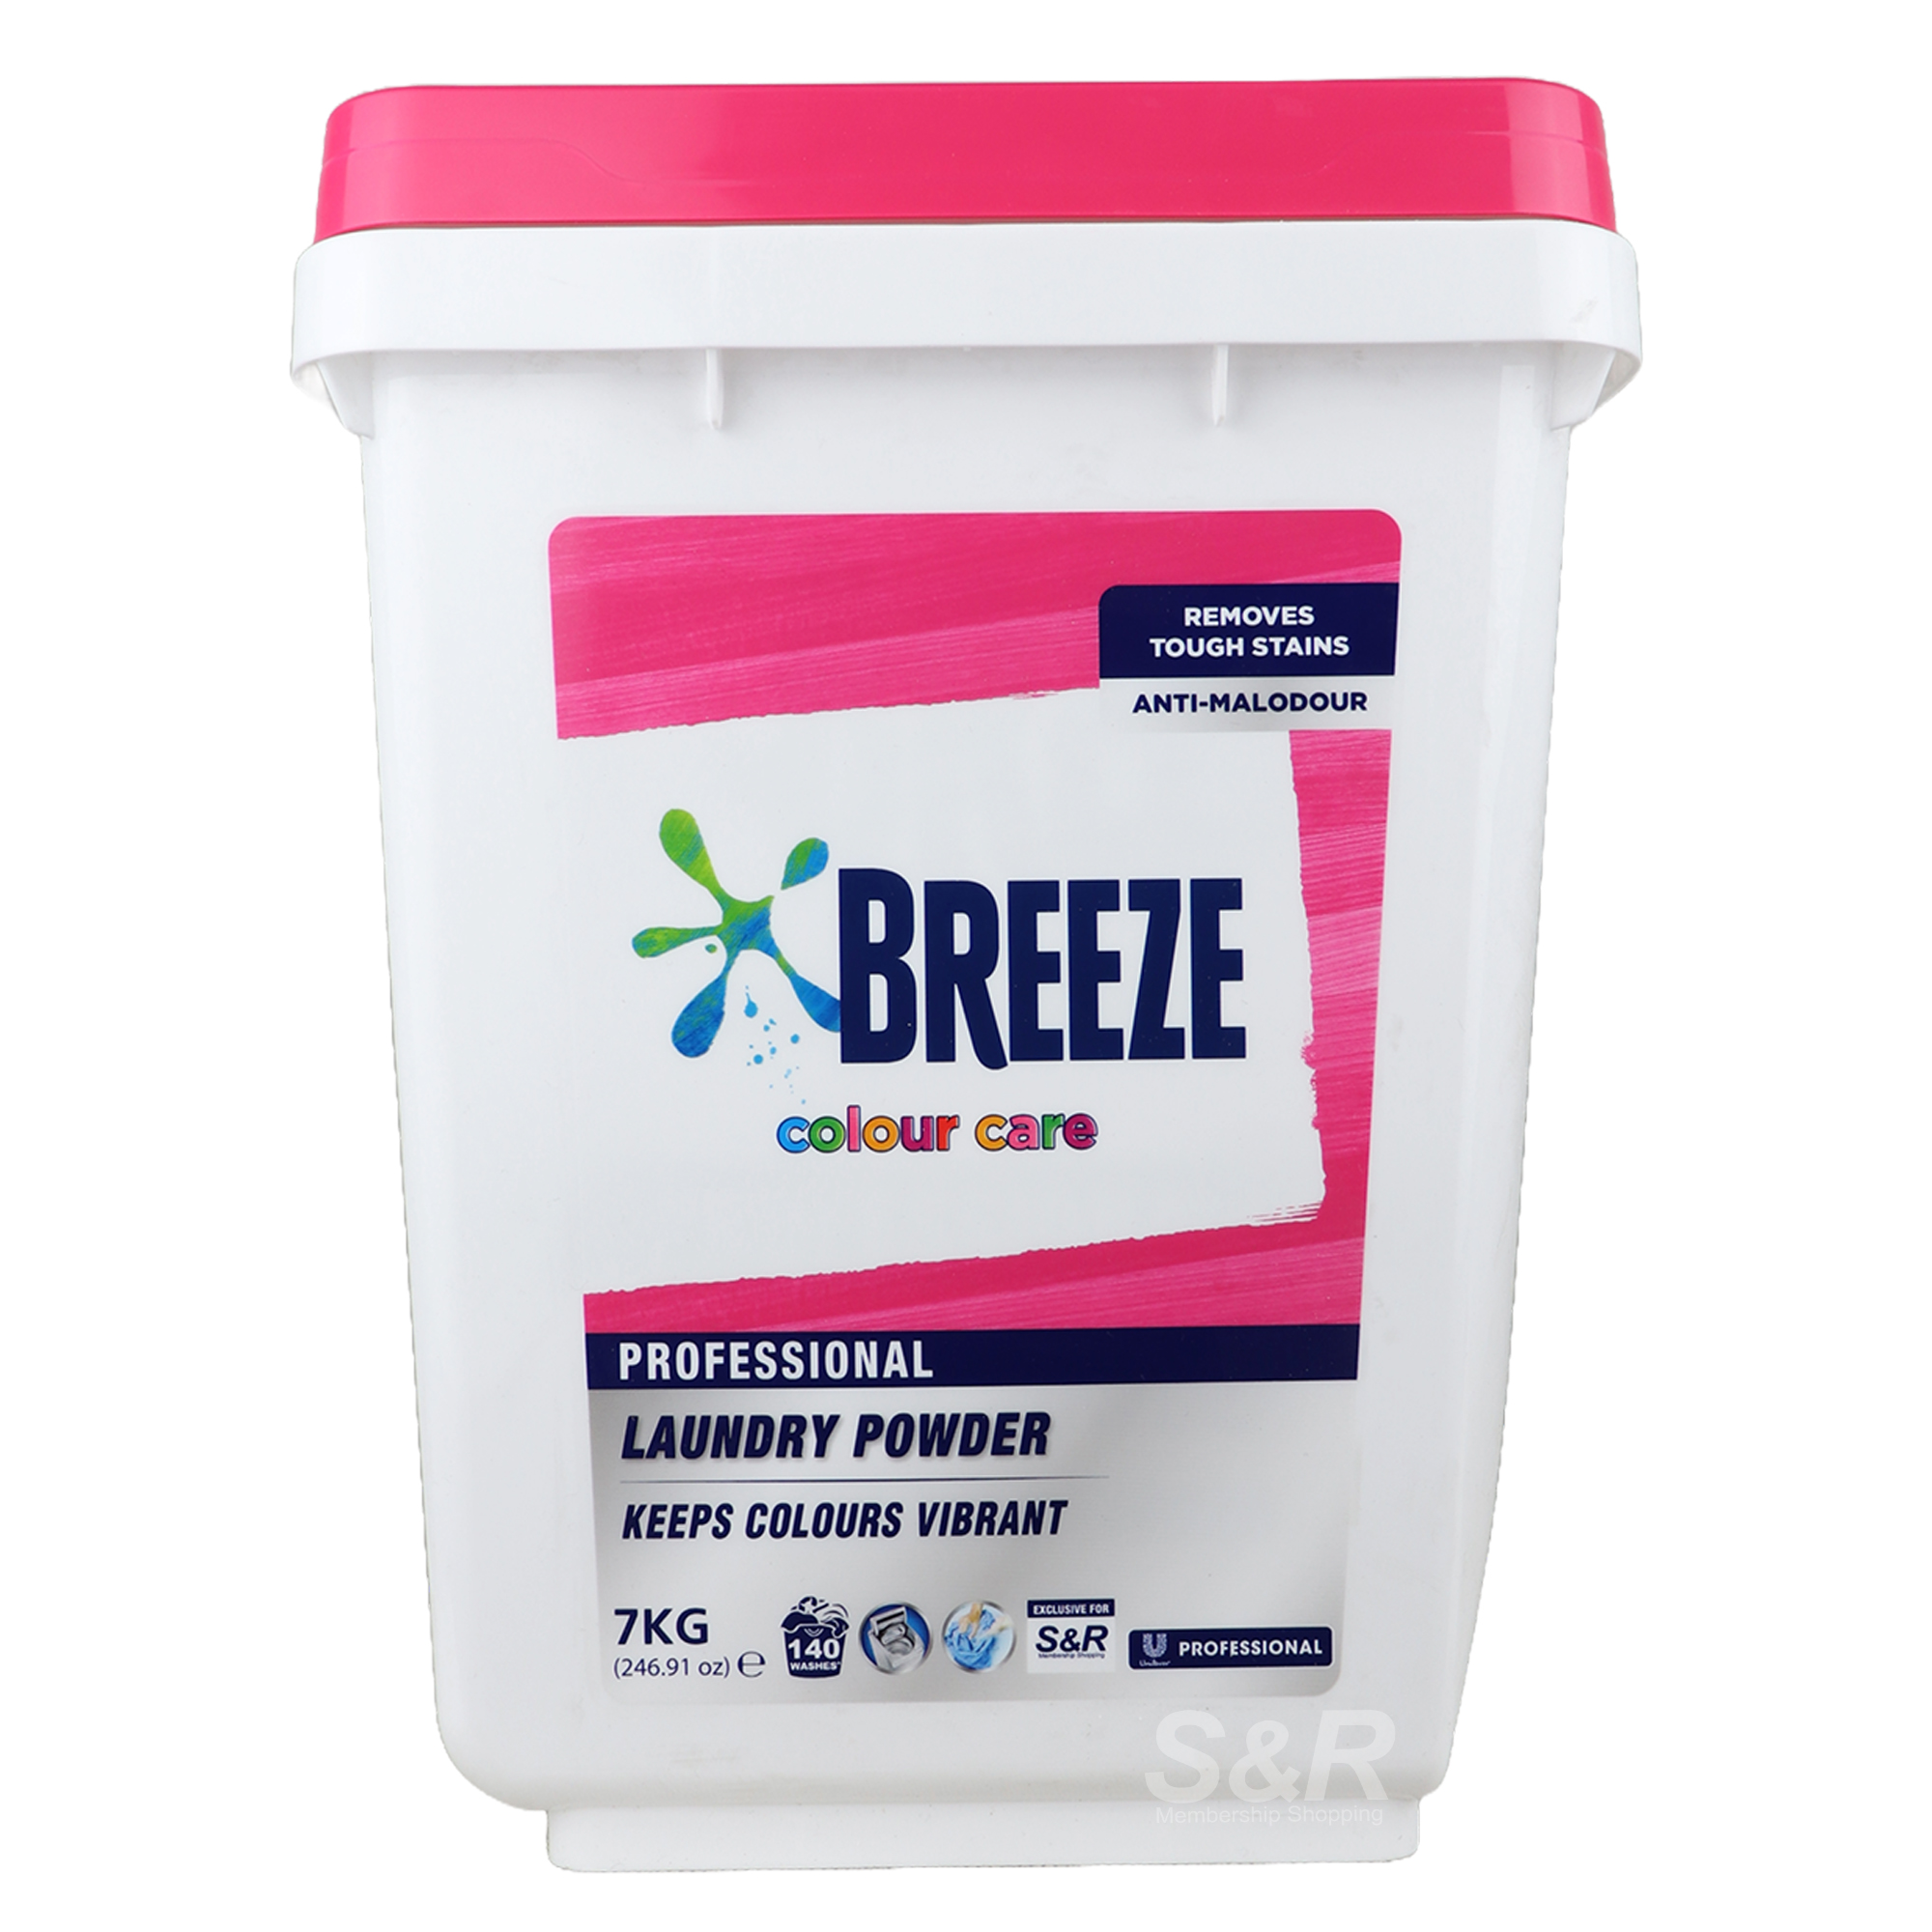 Breeze Colour Care Professional Laundry Powder 7kg